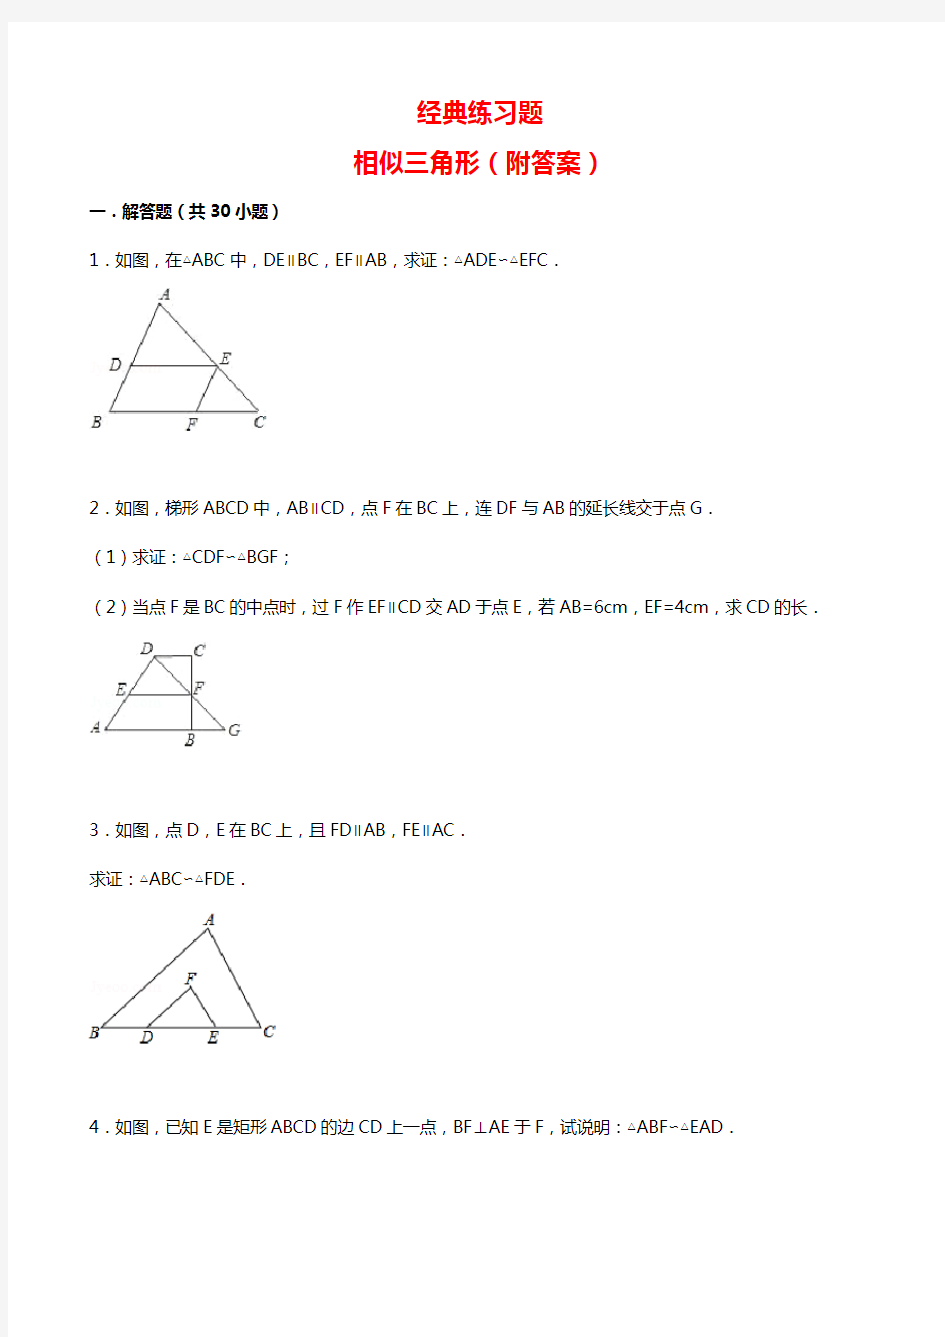 经典相似三角形练习题(附参考答案)